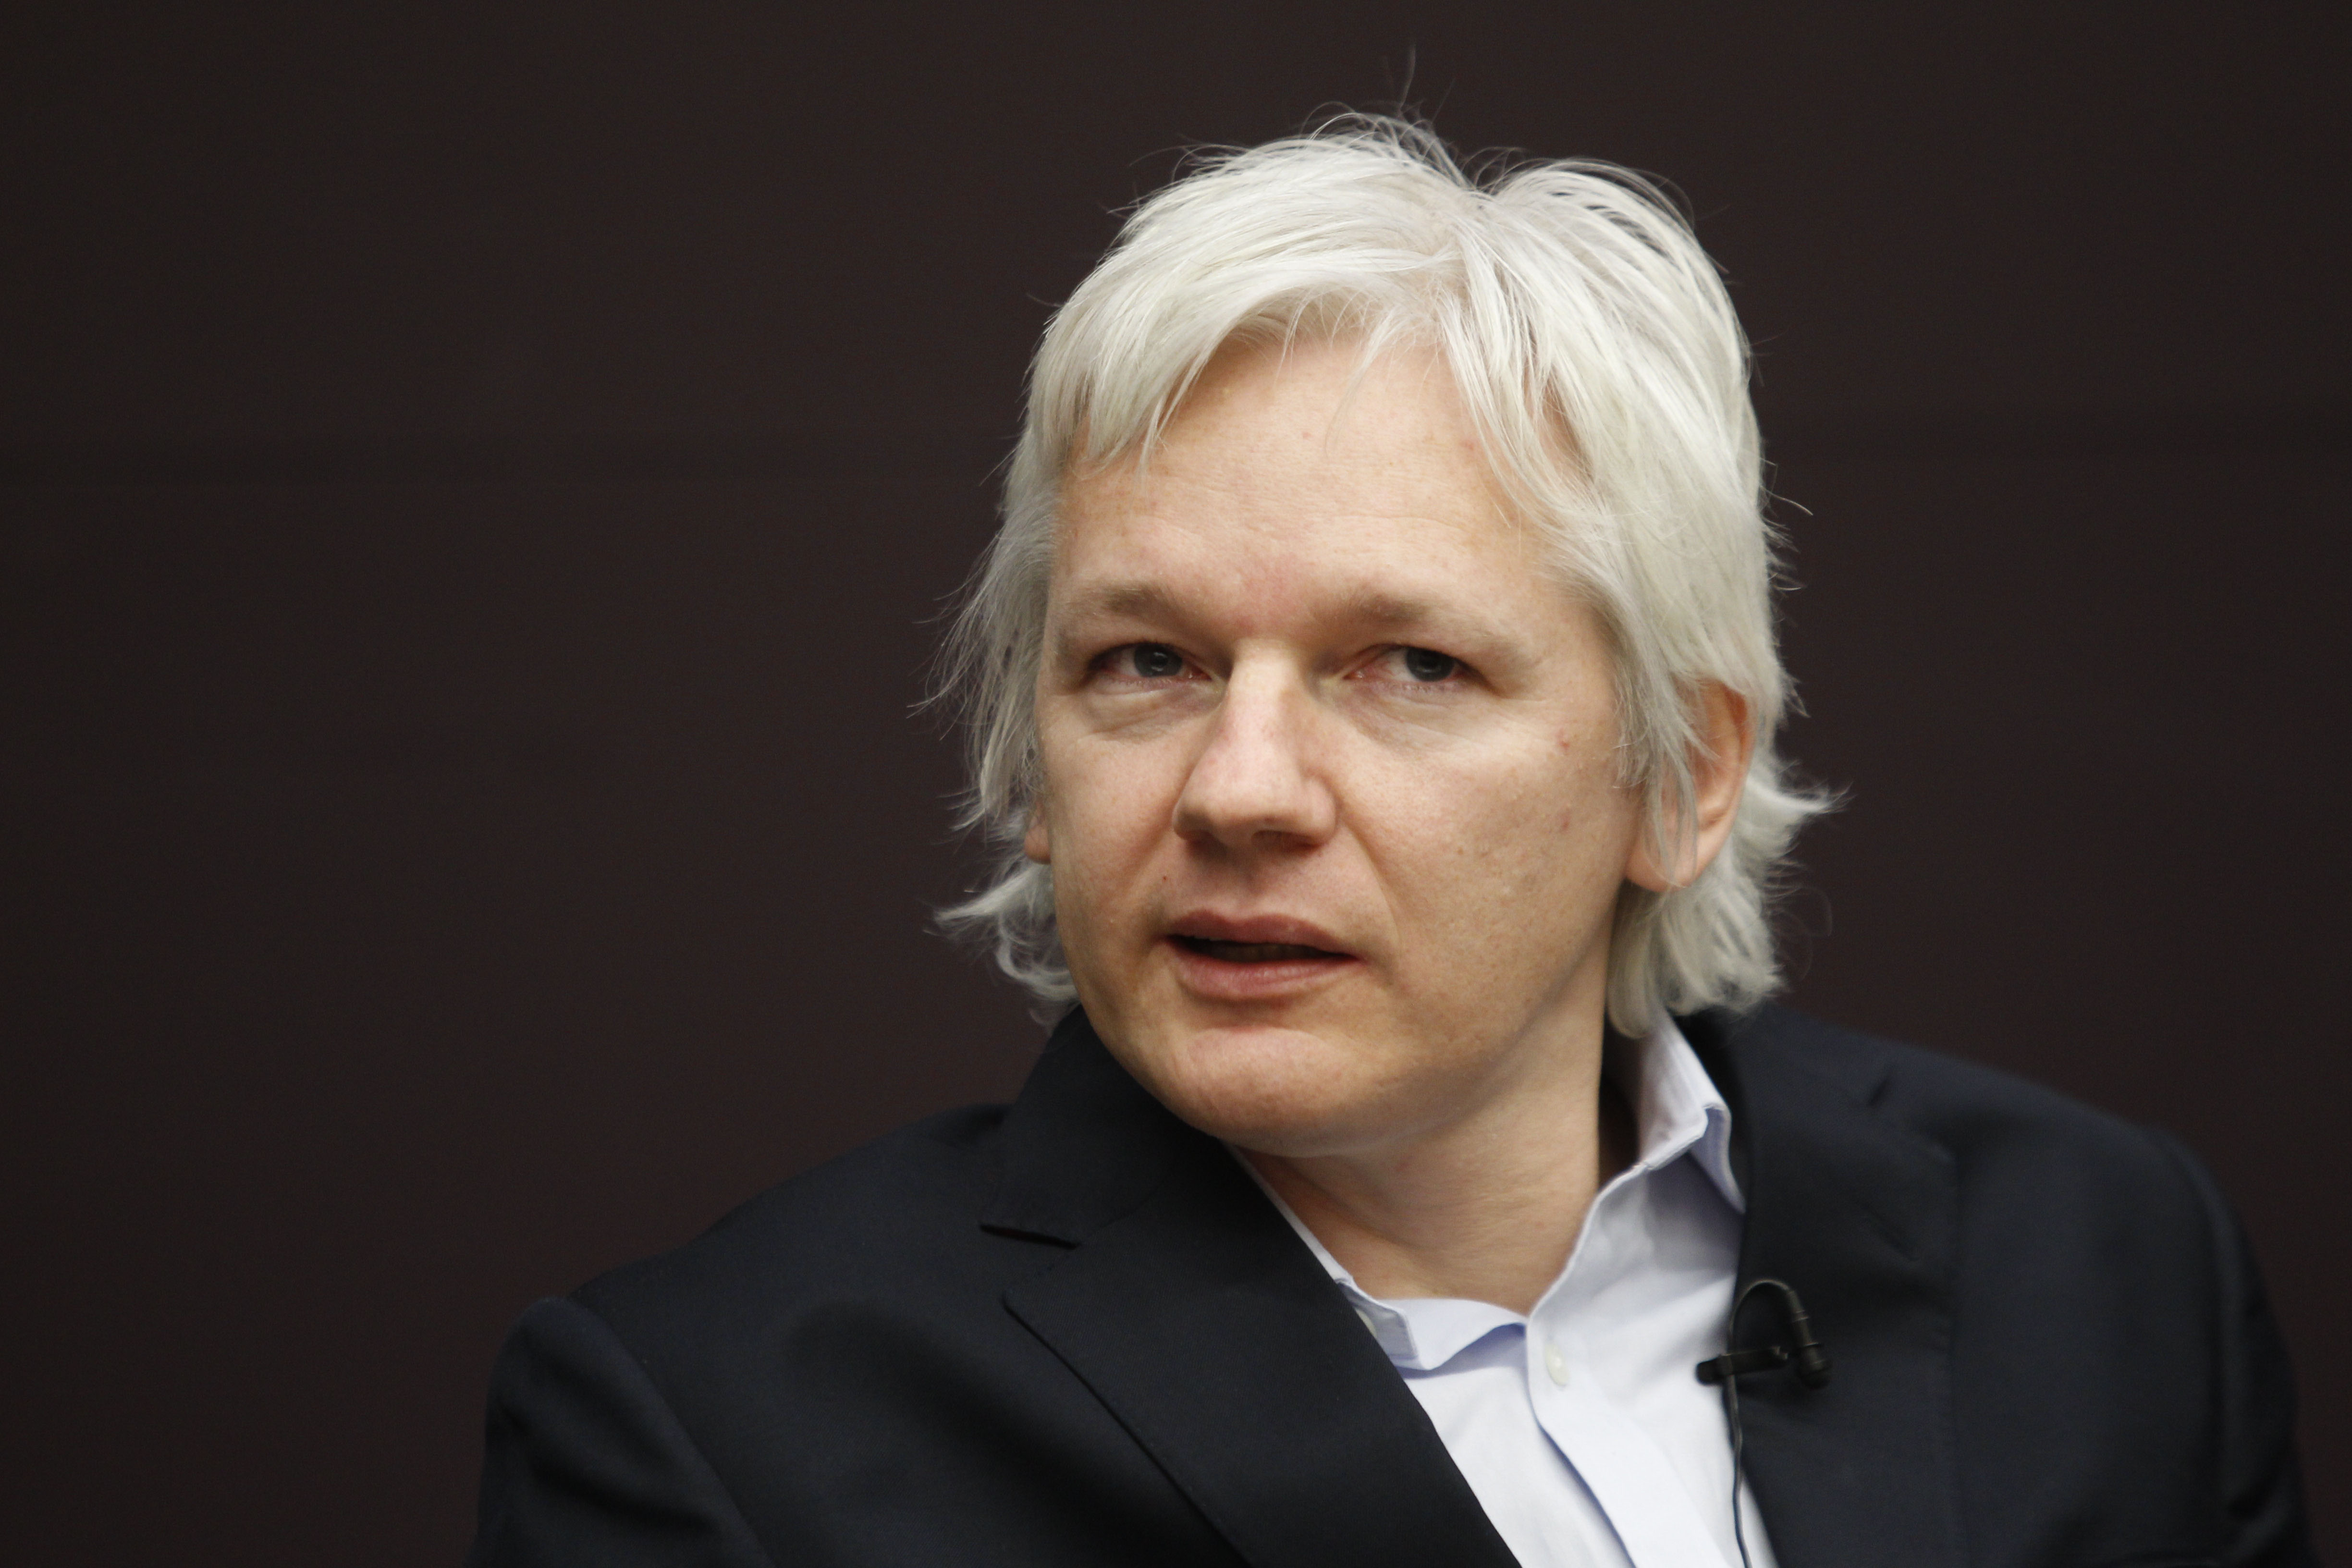 Teve, Russia Today, Wikileaks, Julian Assange, Sverige